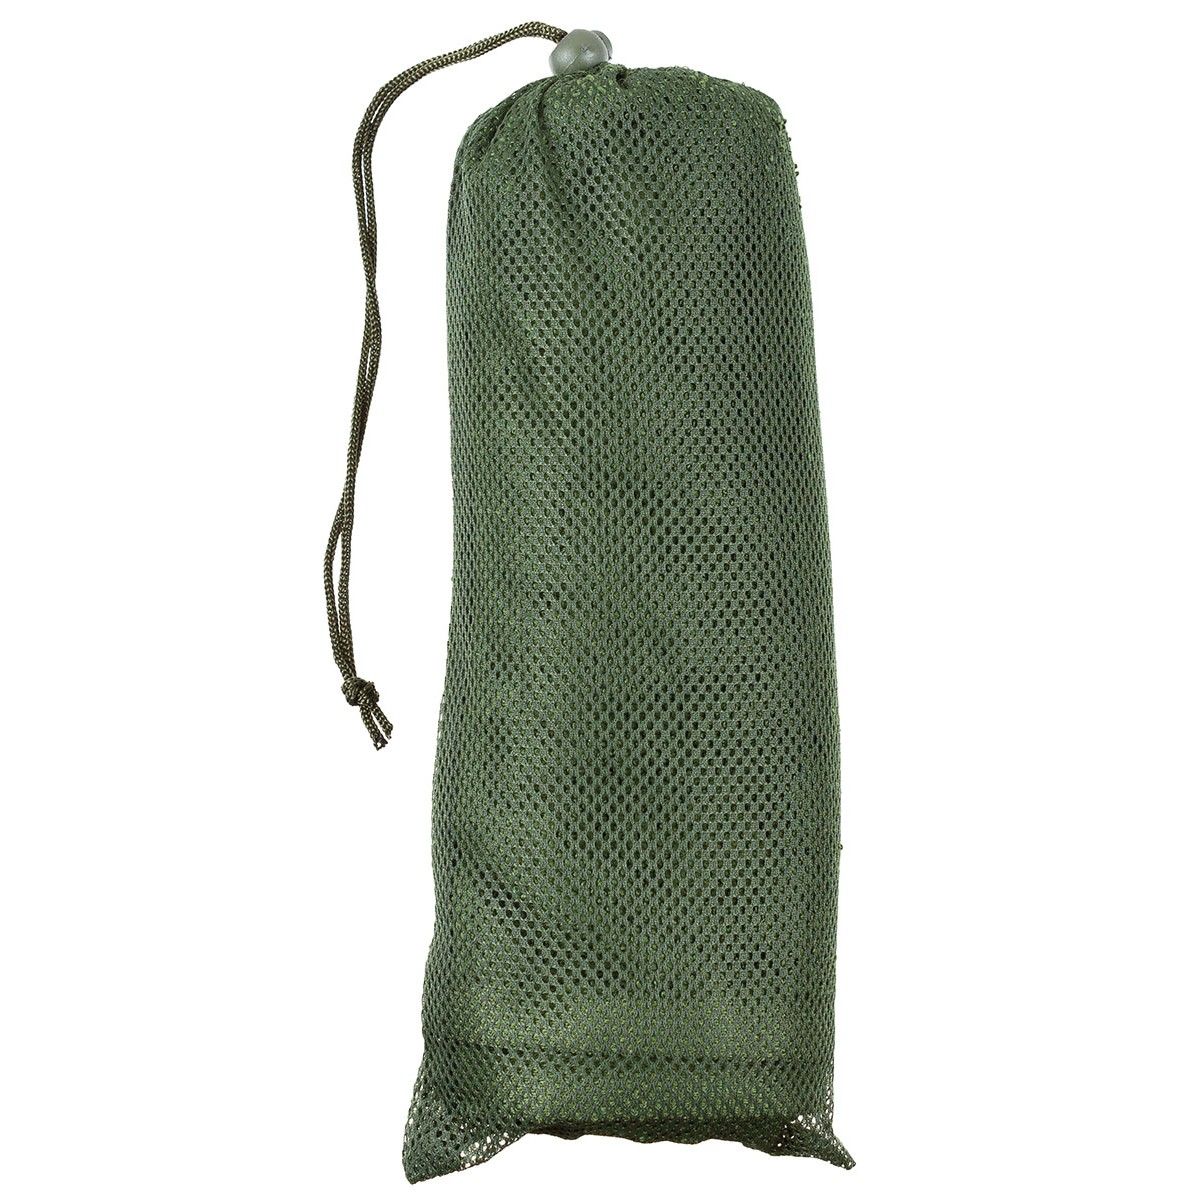 brytyjski ręcznik wojskowy 100x50 używany